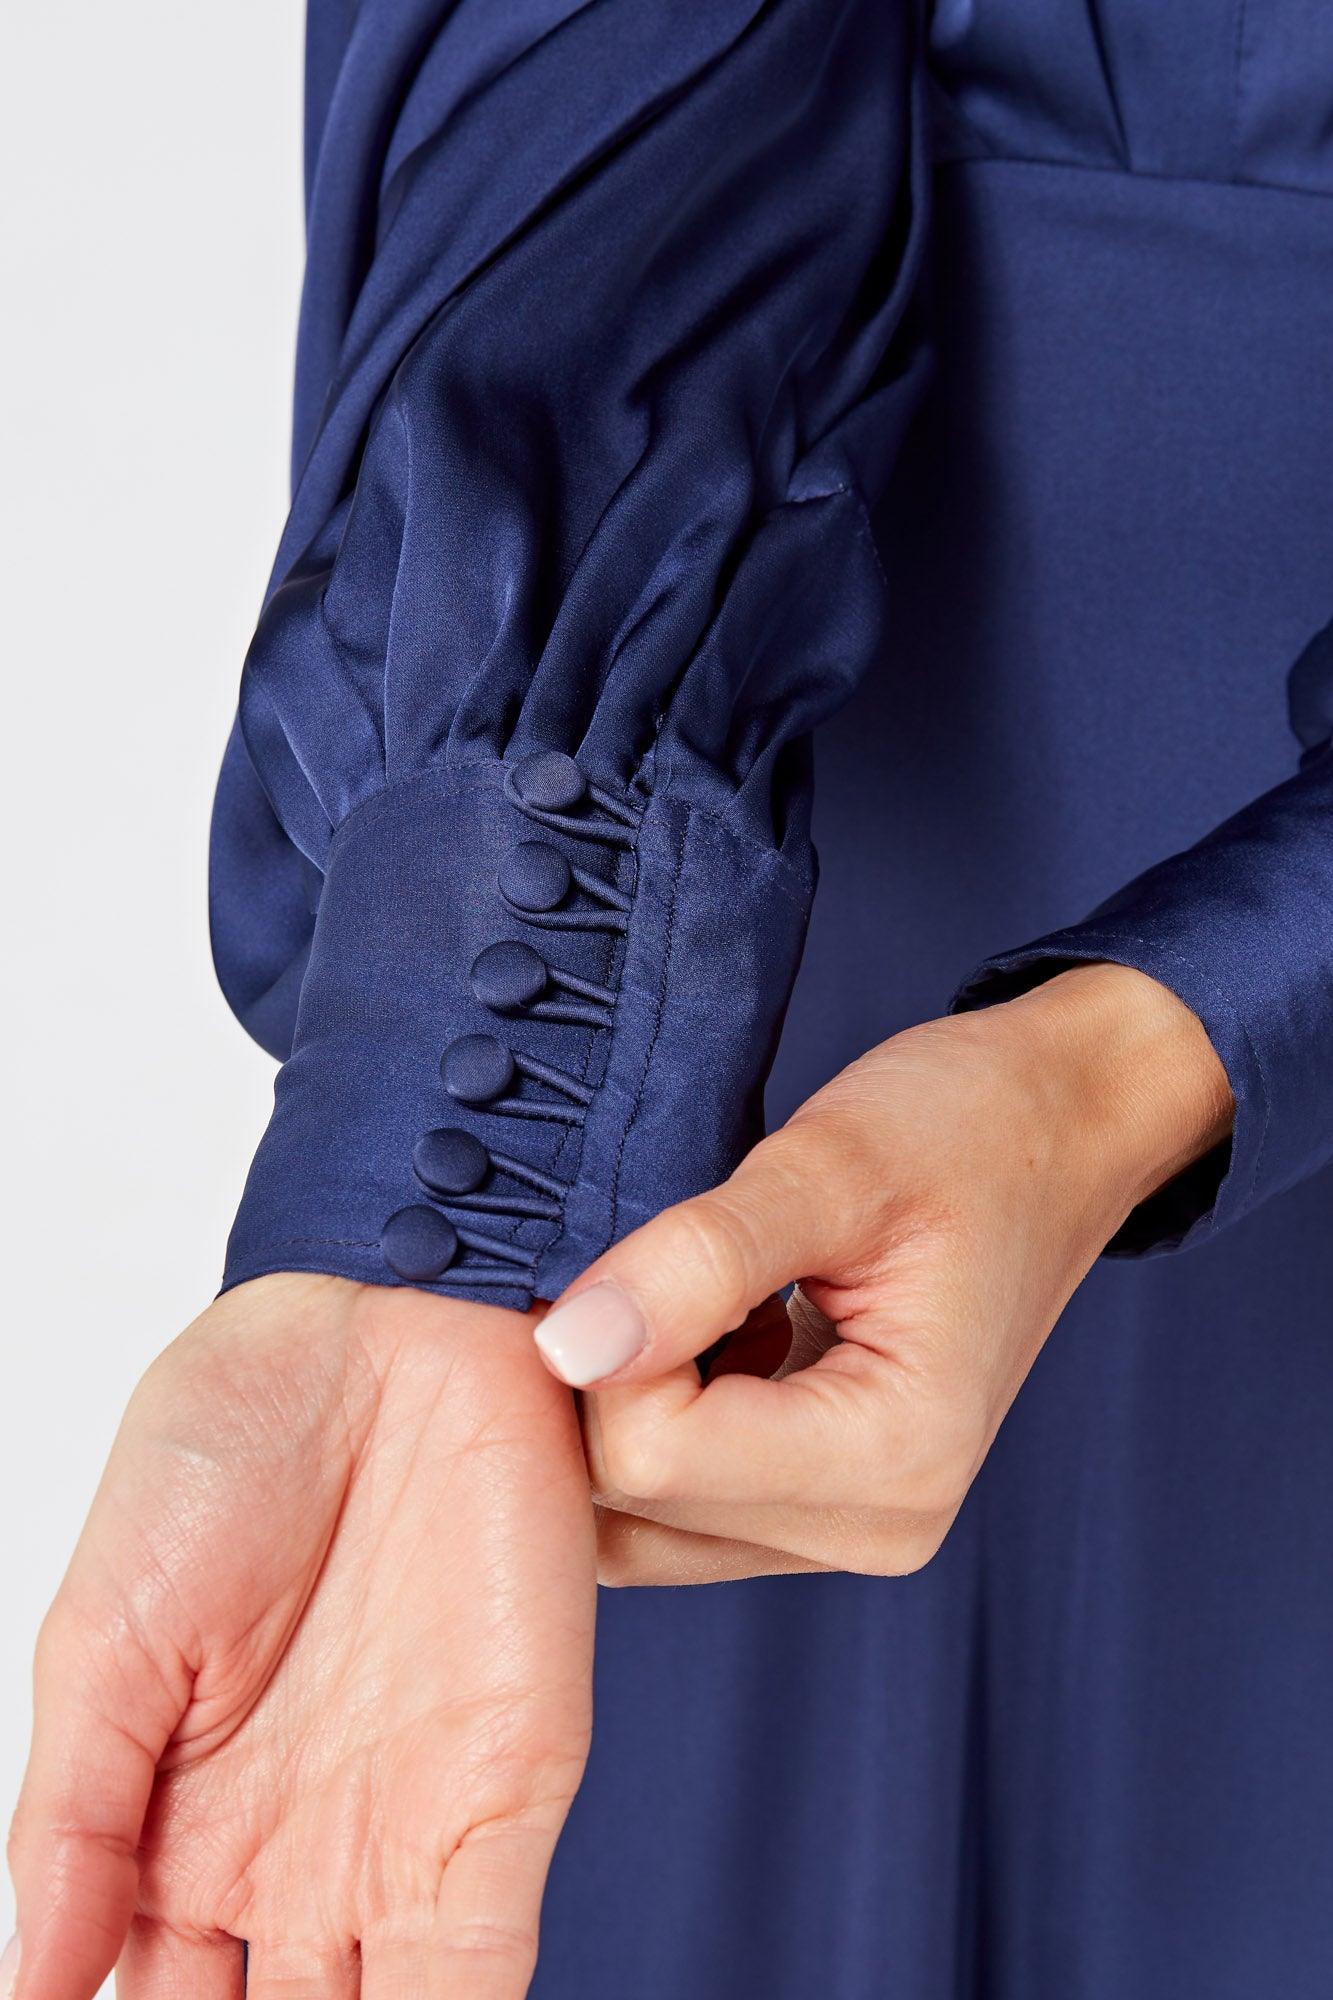 Afina Dark Blue Satin Maxi Dress With Long Sleeves - TAHLIRA